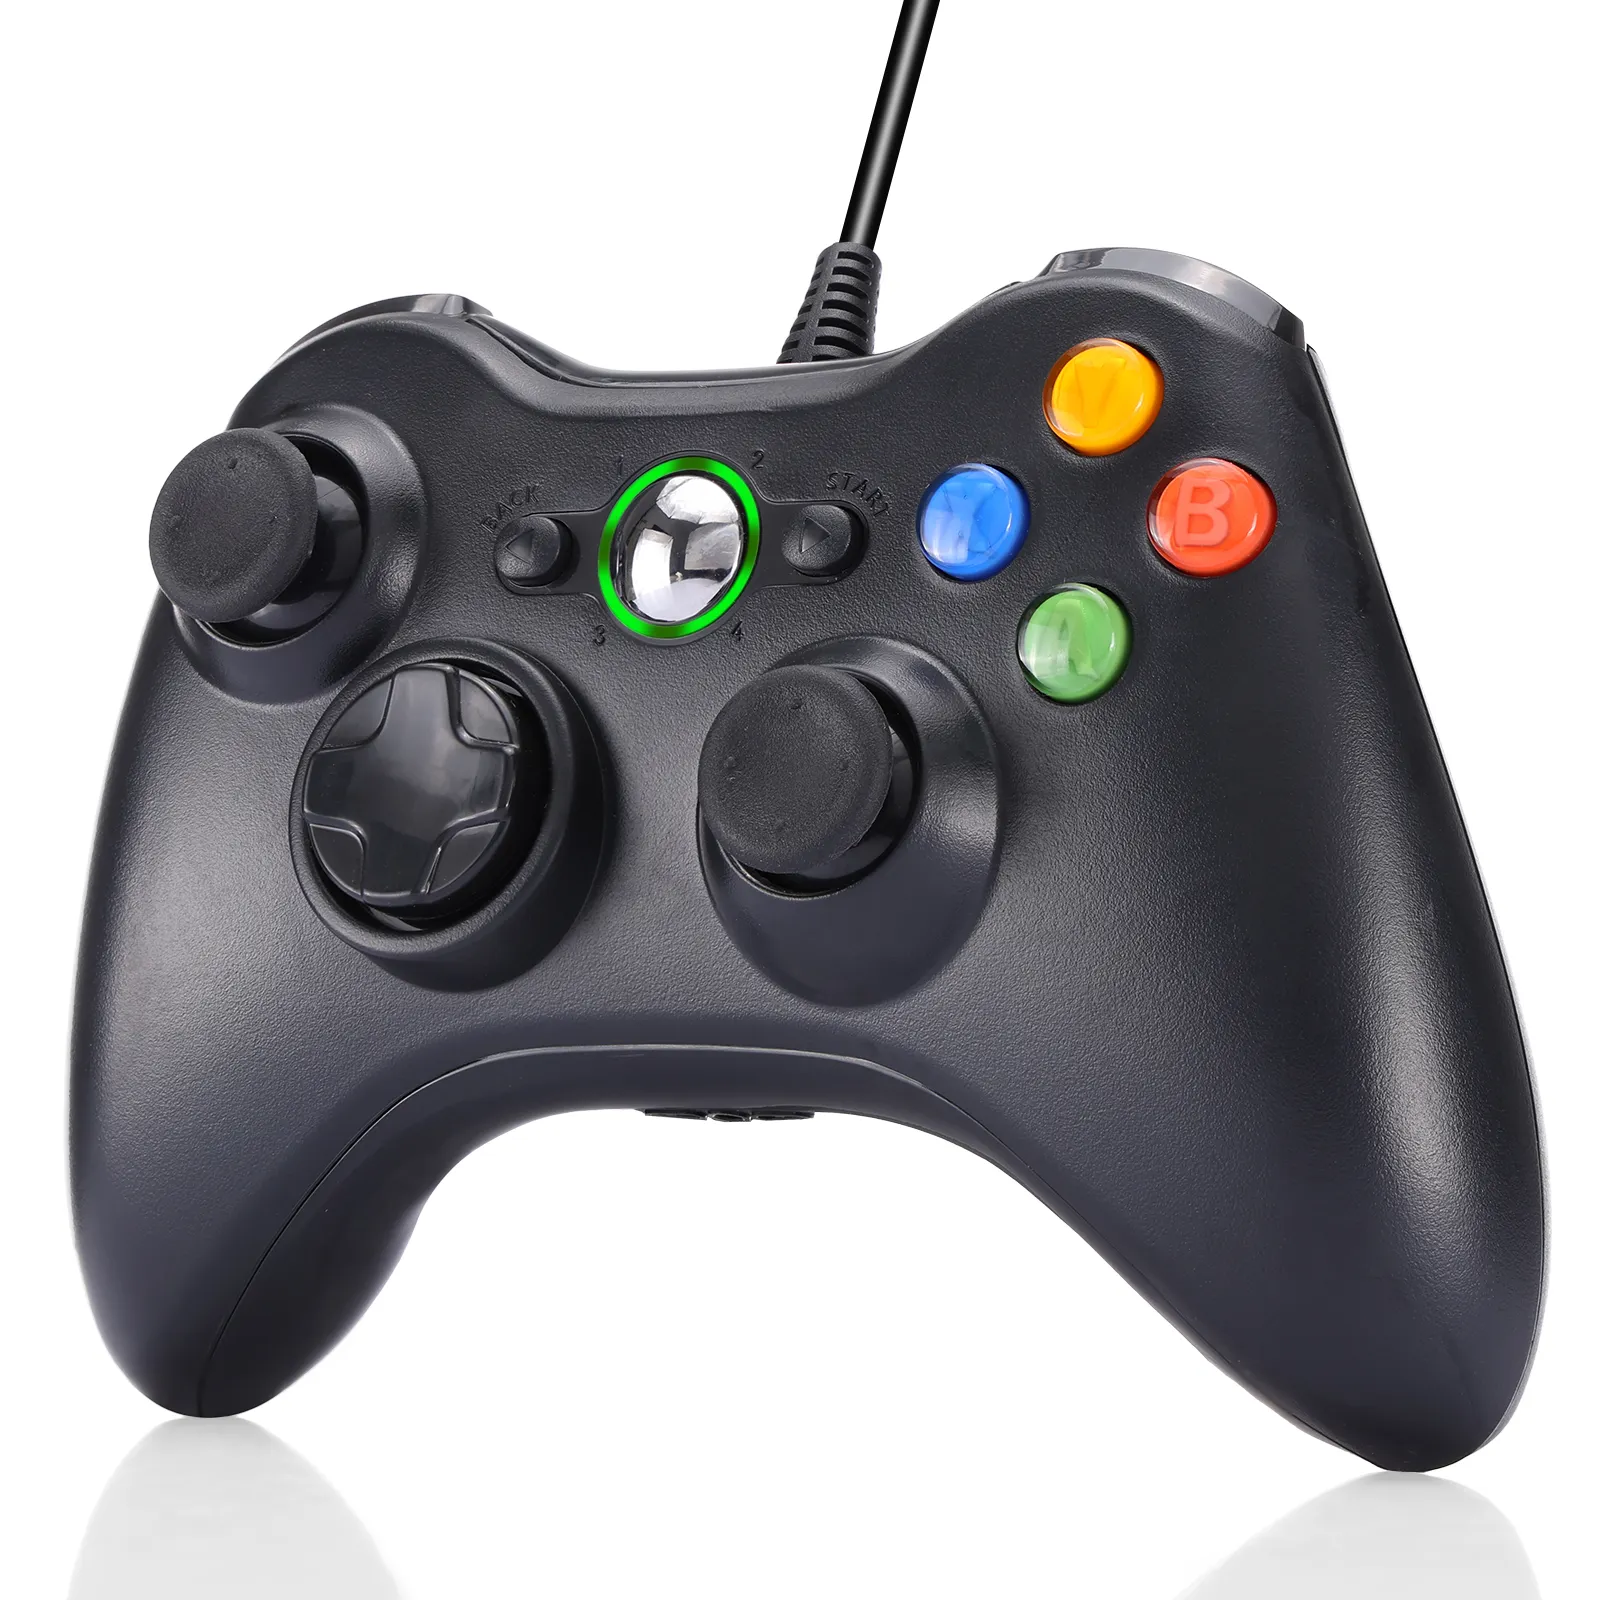 Геймпад для Microsoft Xboxs 360 контроллер проводной джойстик Joy Pad USB Game Pad Control Xbox 360 контроллер и ПК